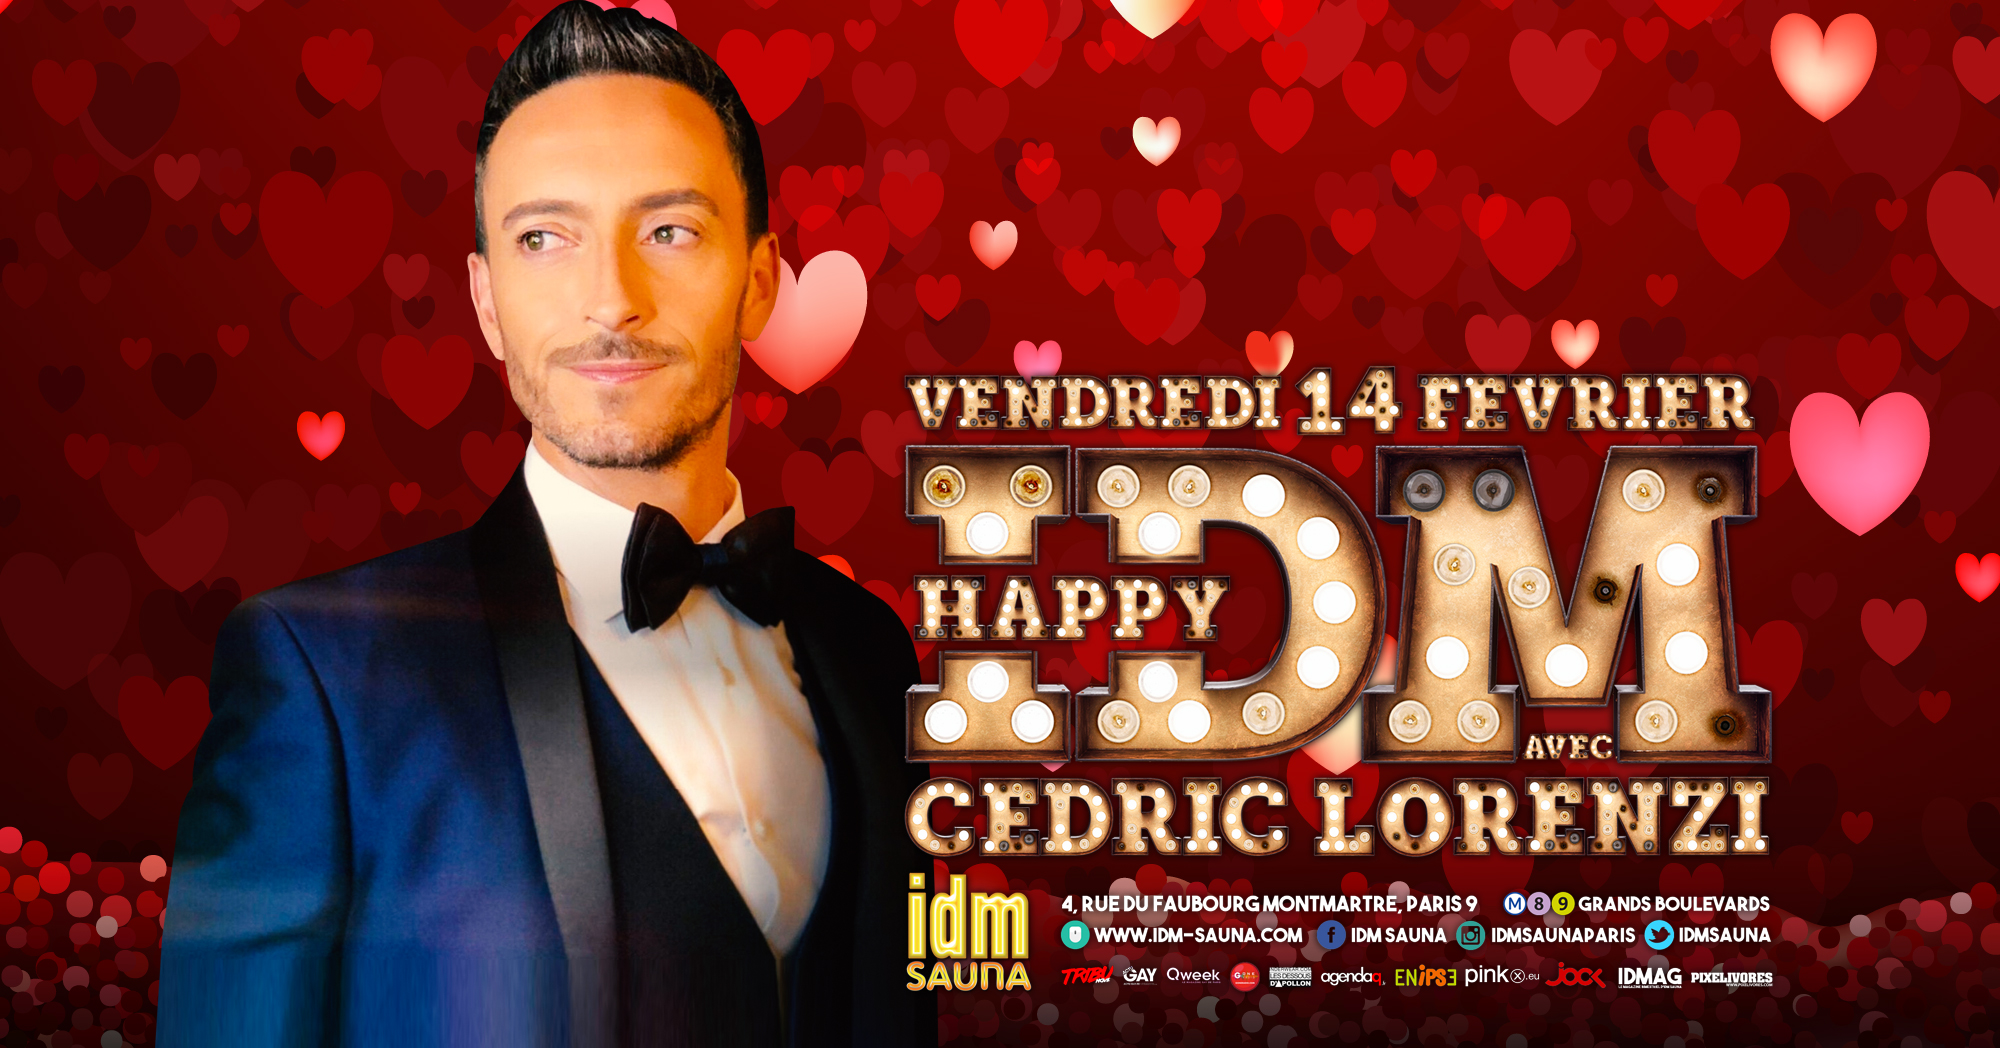 "Happy Cédric Lorenzi" Vendredi 14 février au sauna IDM